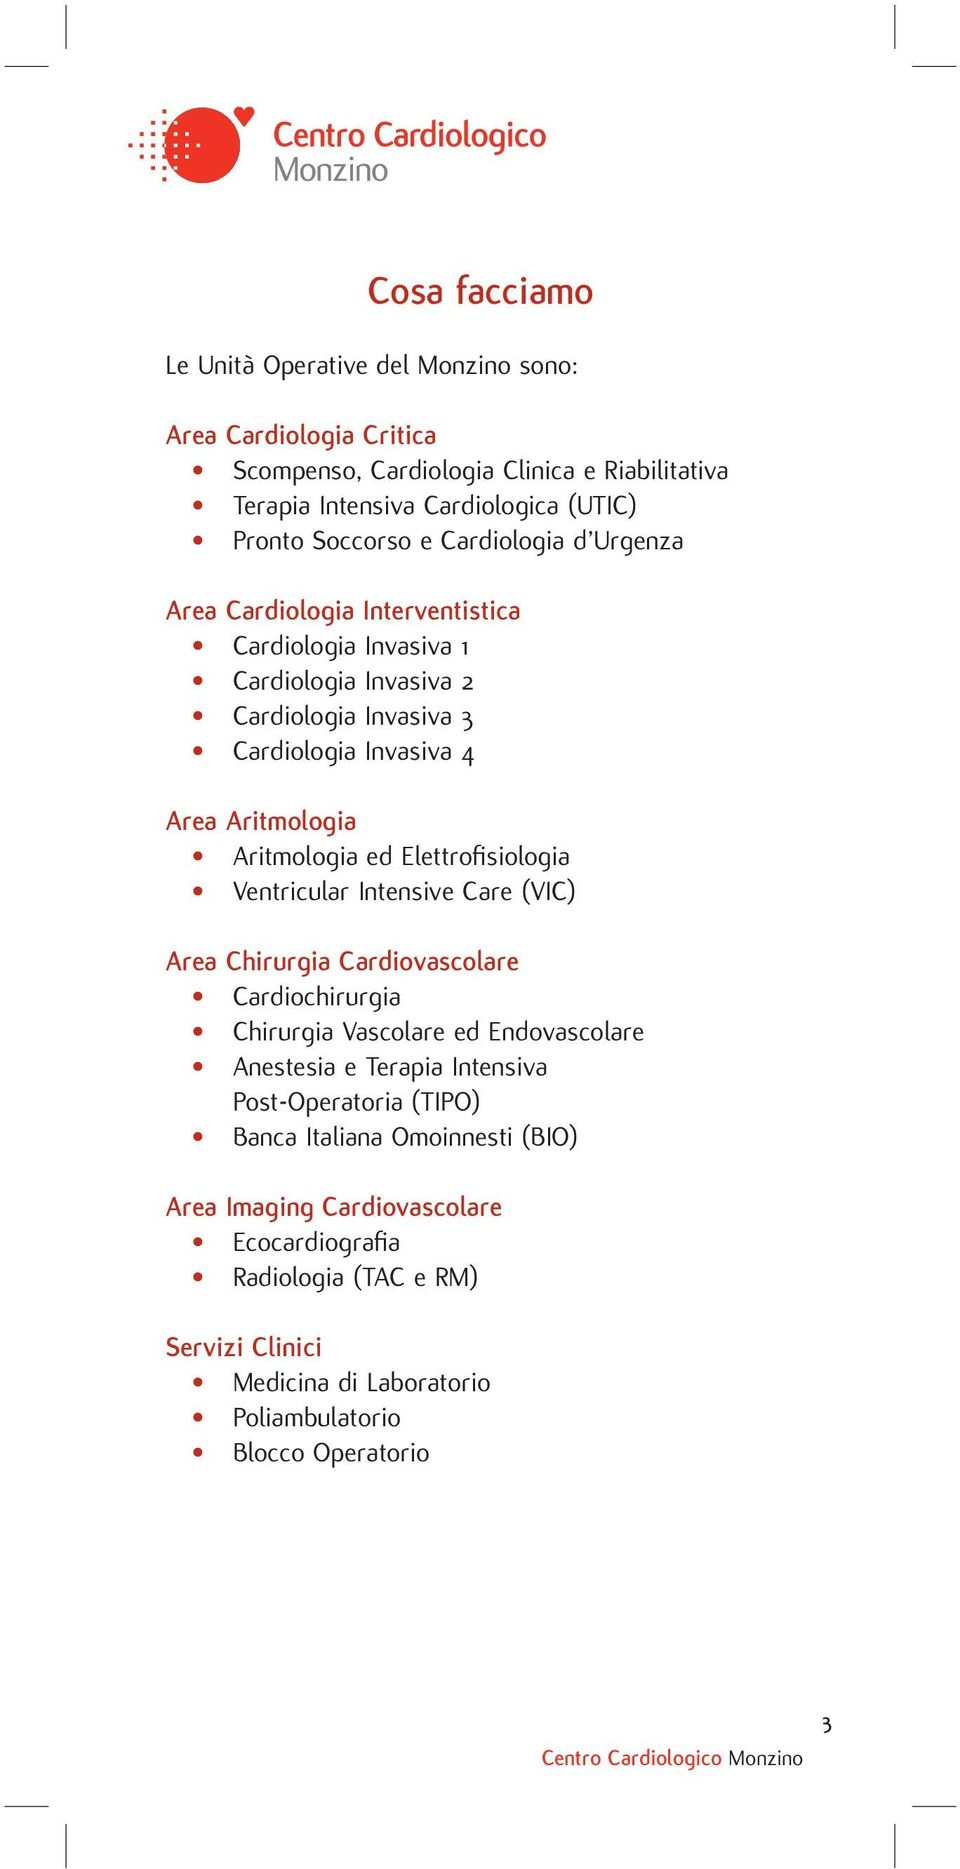 Elettrofi siologia Ventricular Intensive Care (VIC) Area Chirurgia Cardiovascolare Cardiochirurgia Chirurgia Vascolare ed Endovascolare Anestesia e Terapia Intensiva